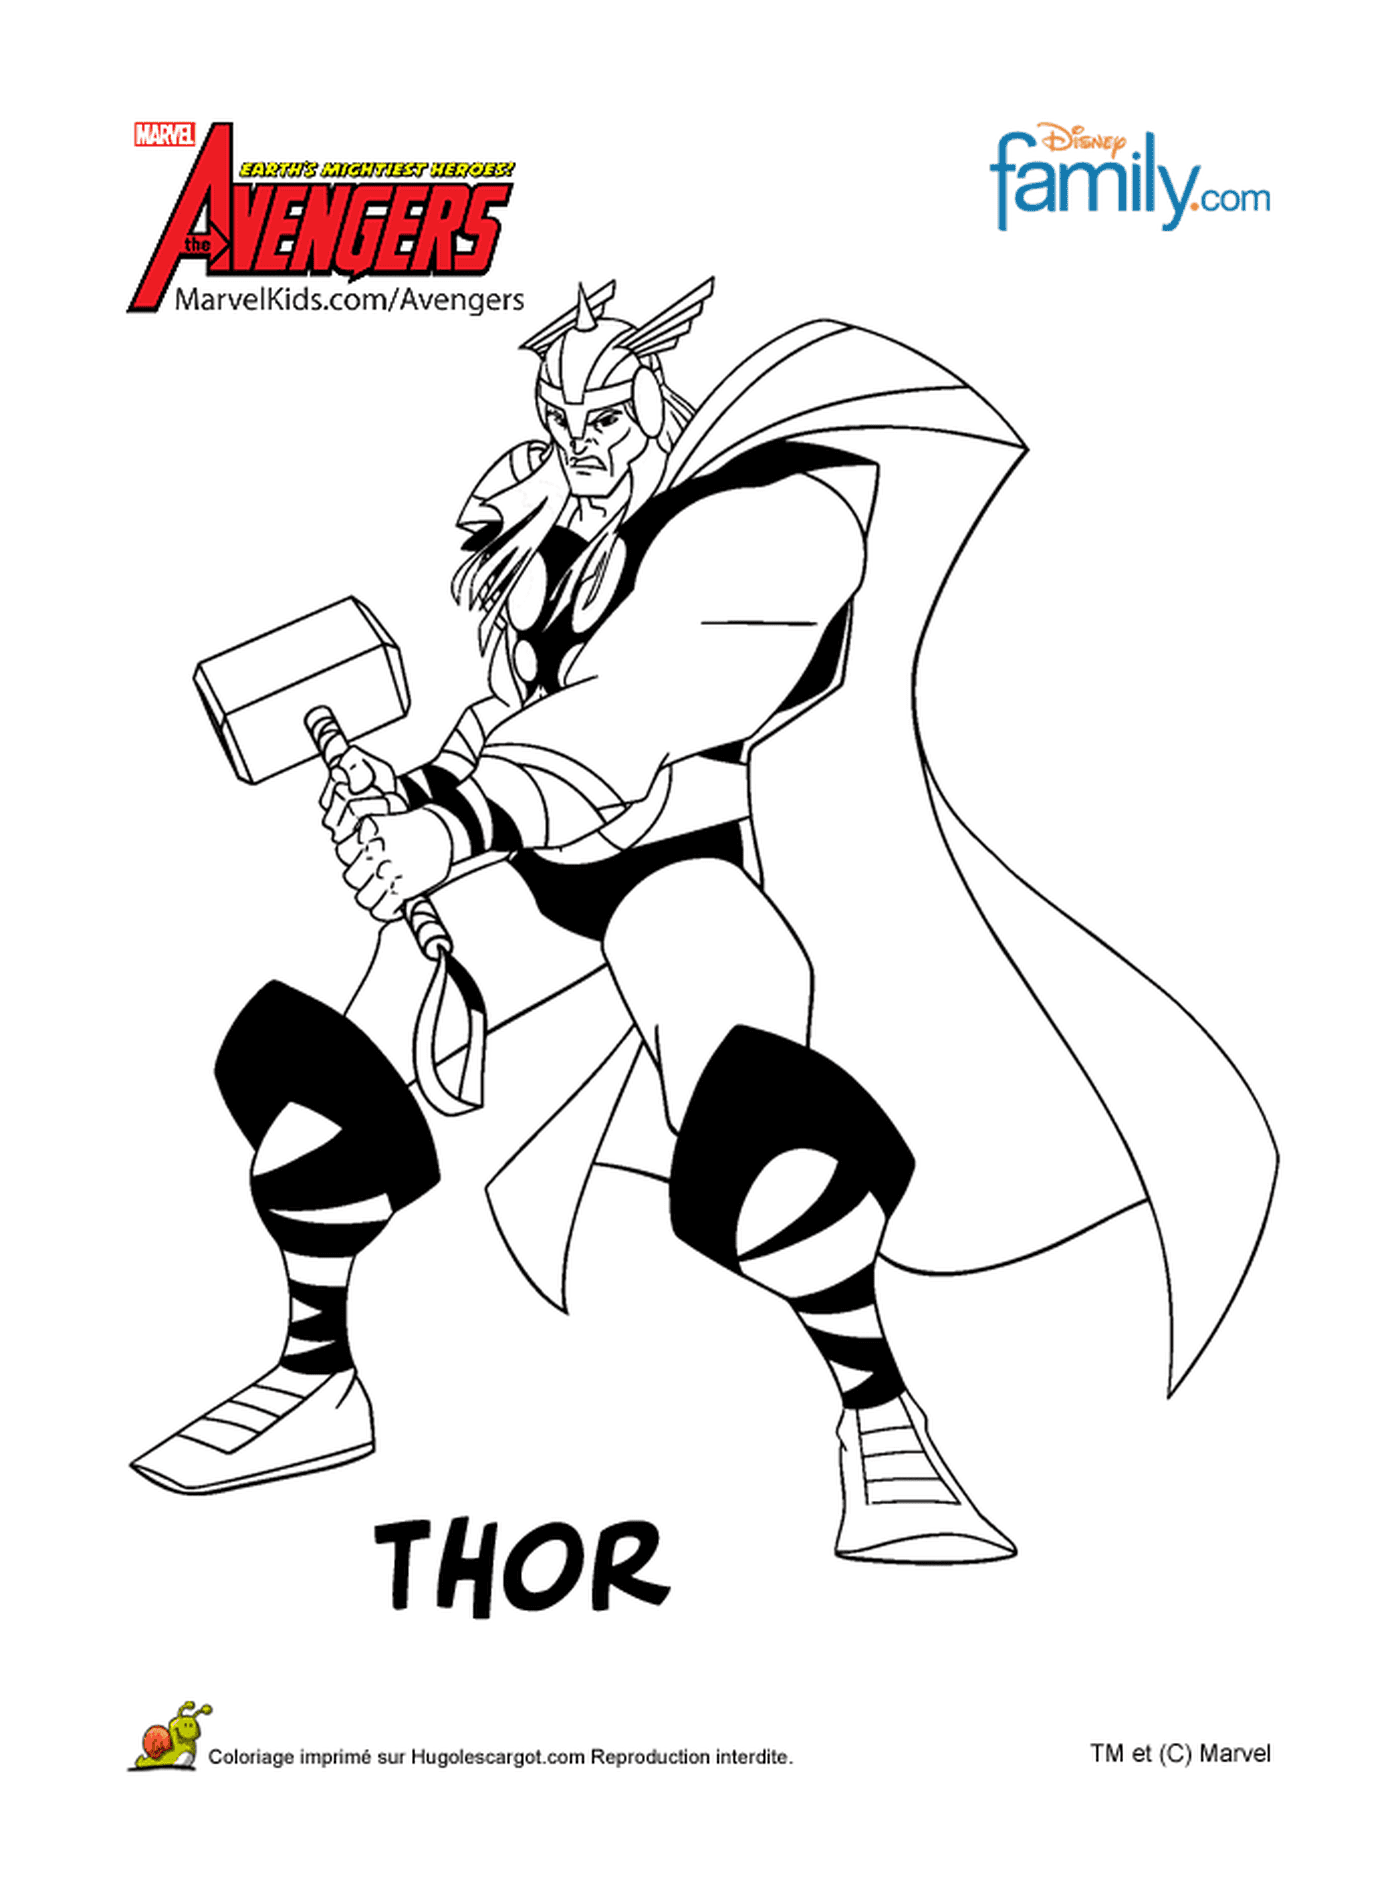  Thor hält einen Hammer 